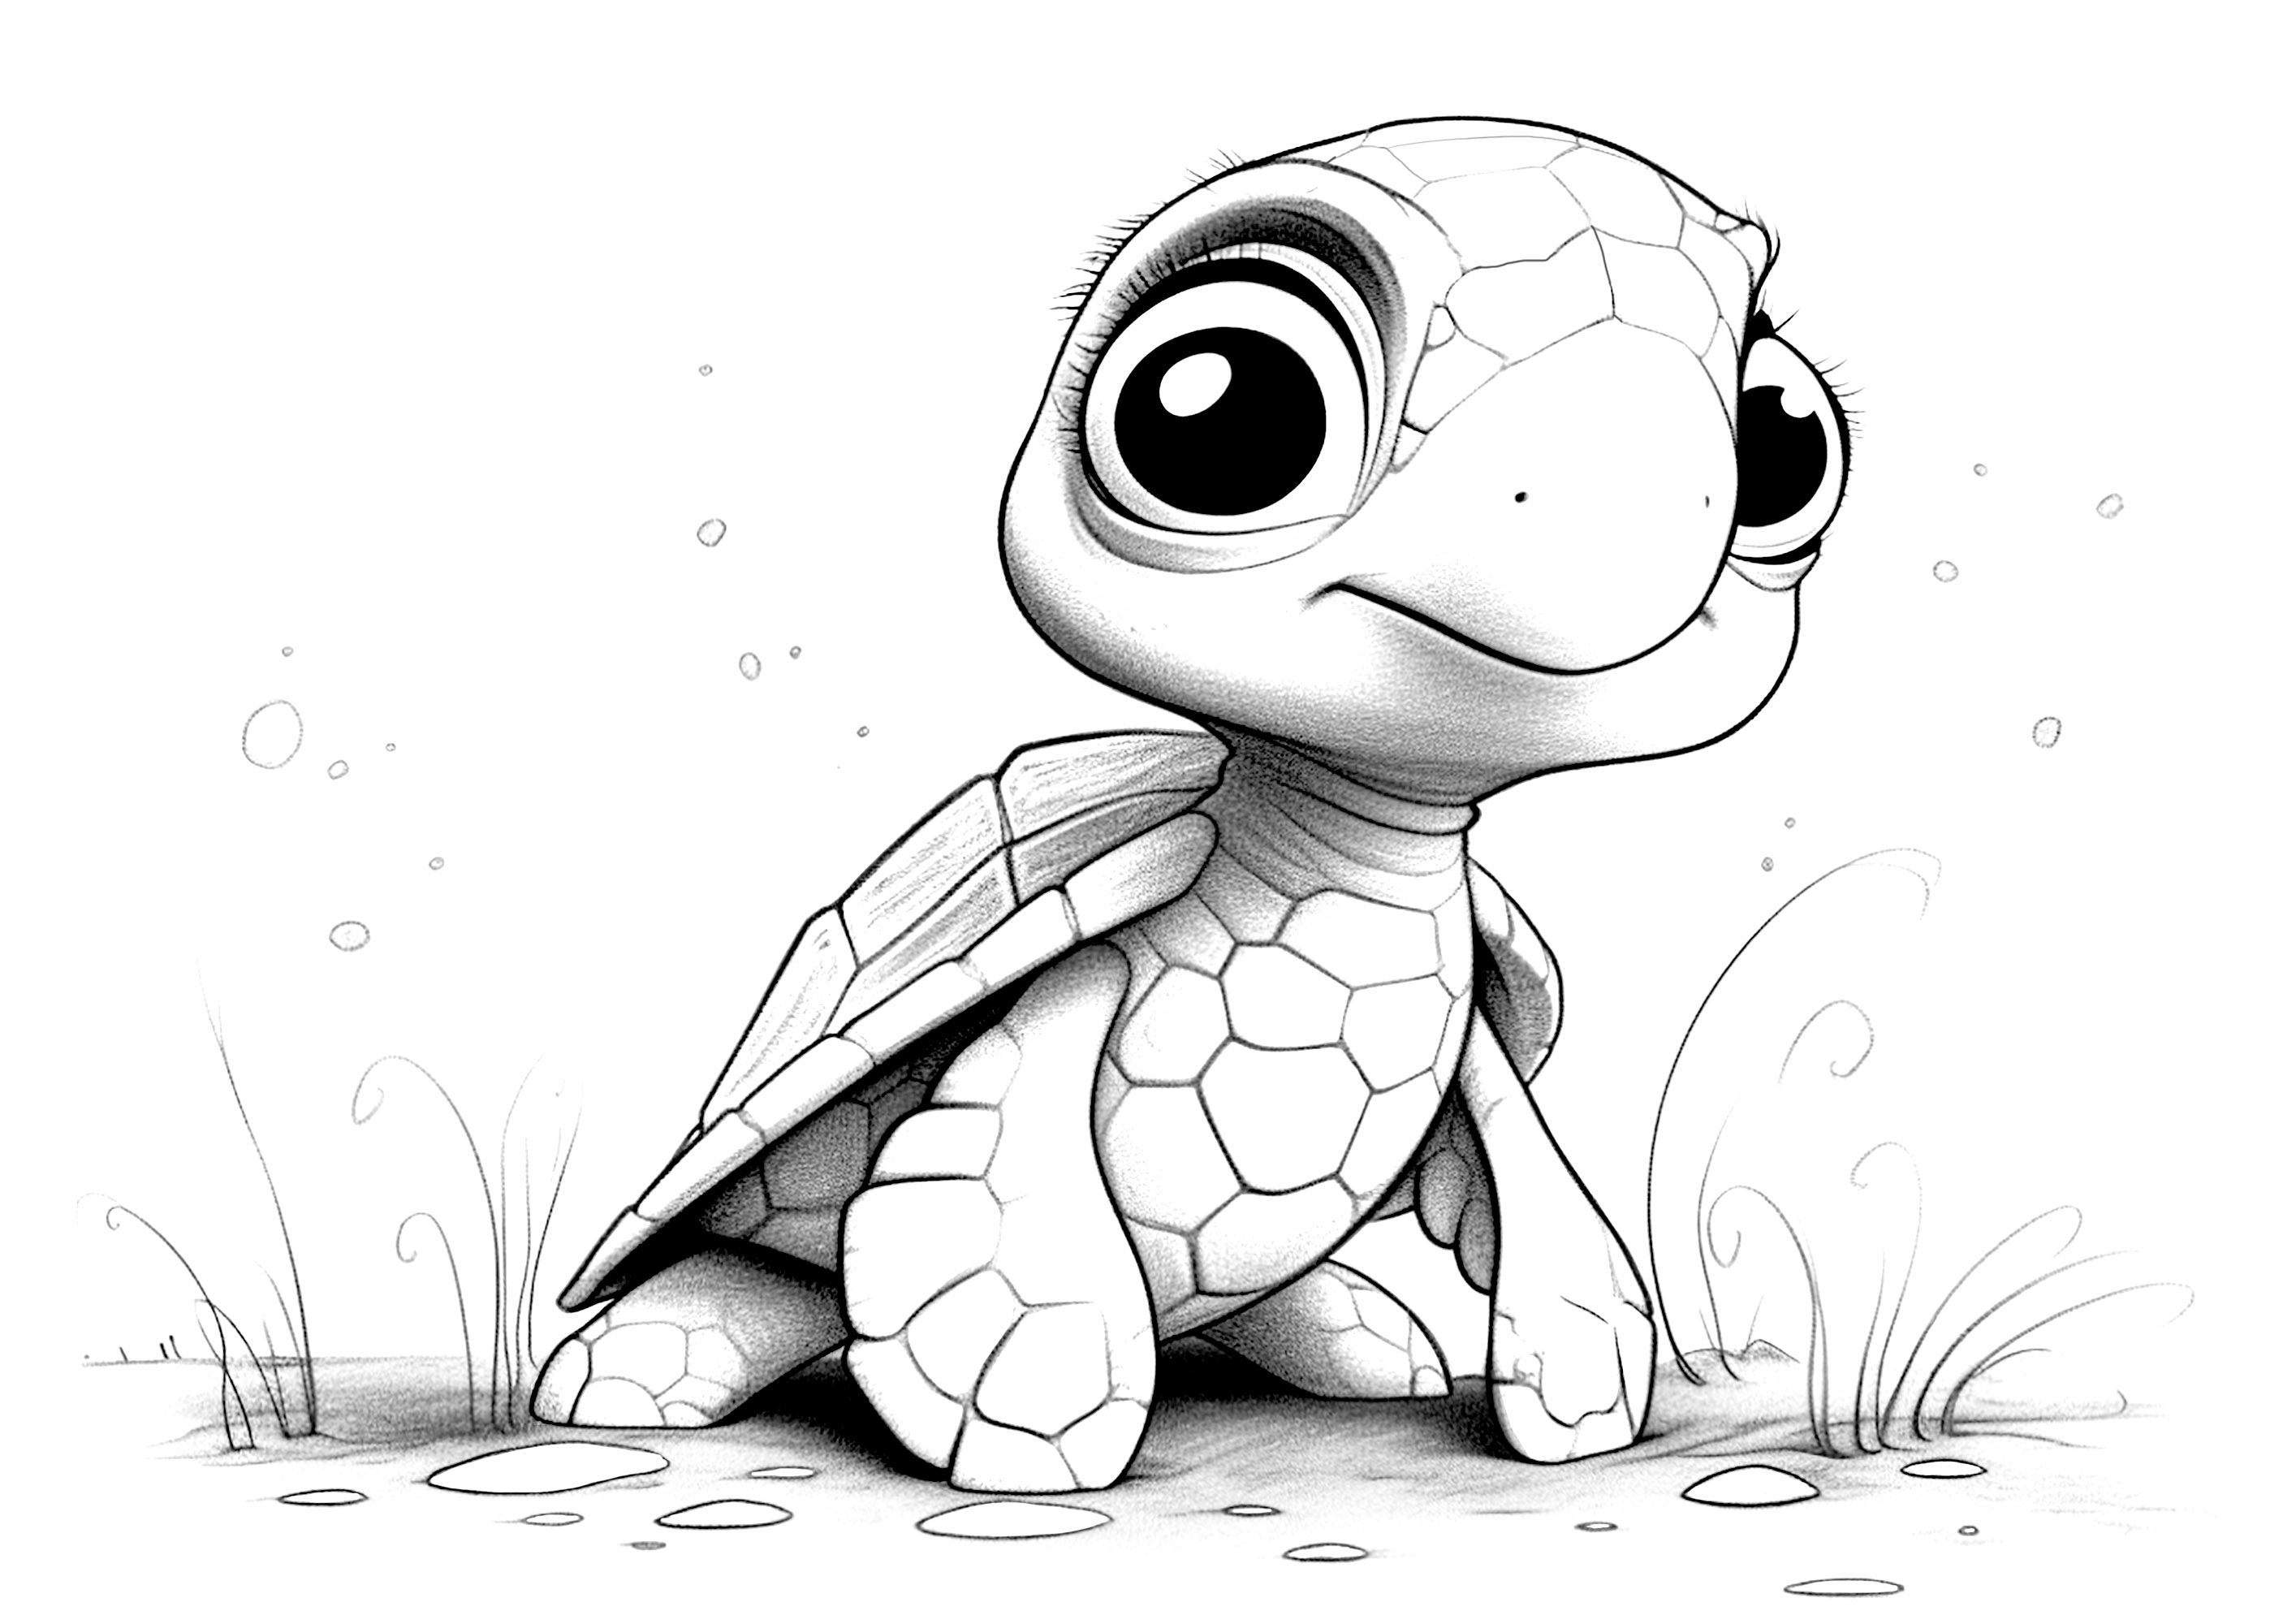 Petite tortue. Un style mélangeant le dessin au crayon et la 3D style Disney/Pixar